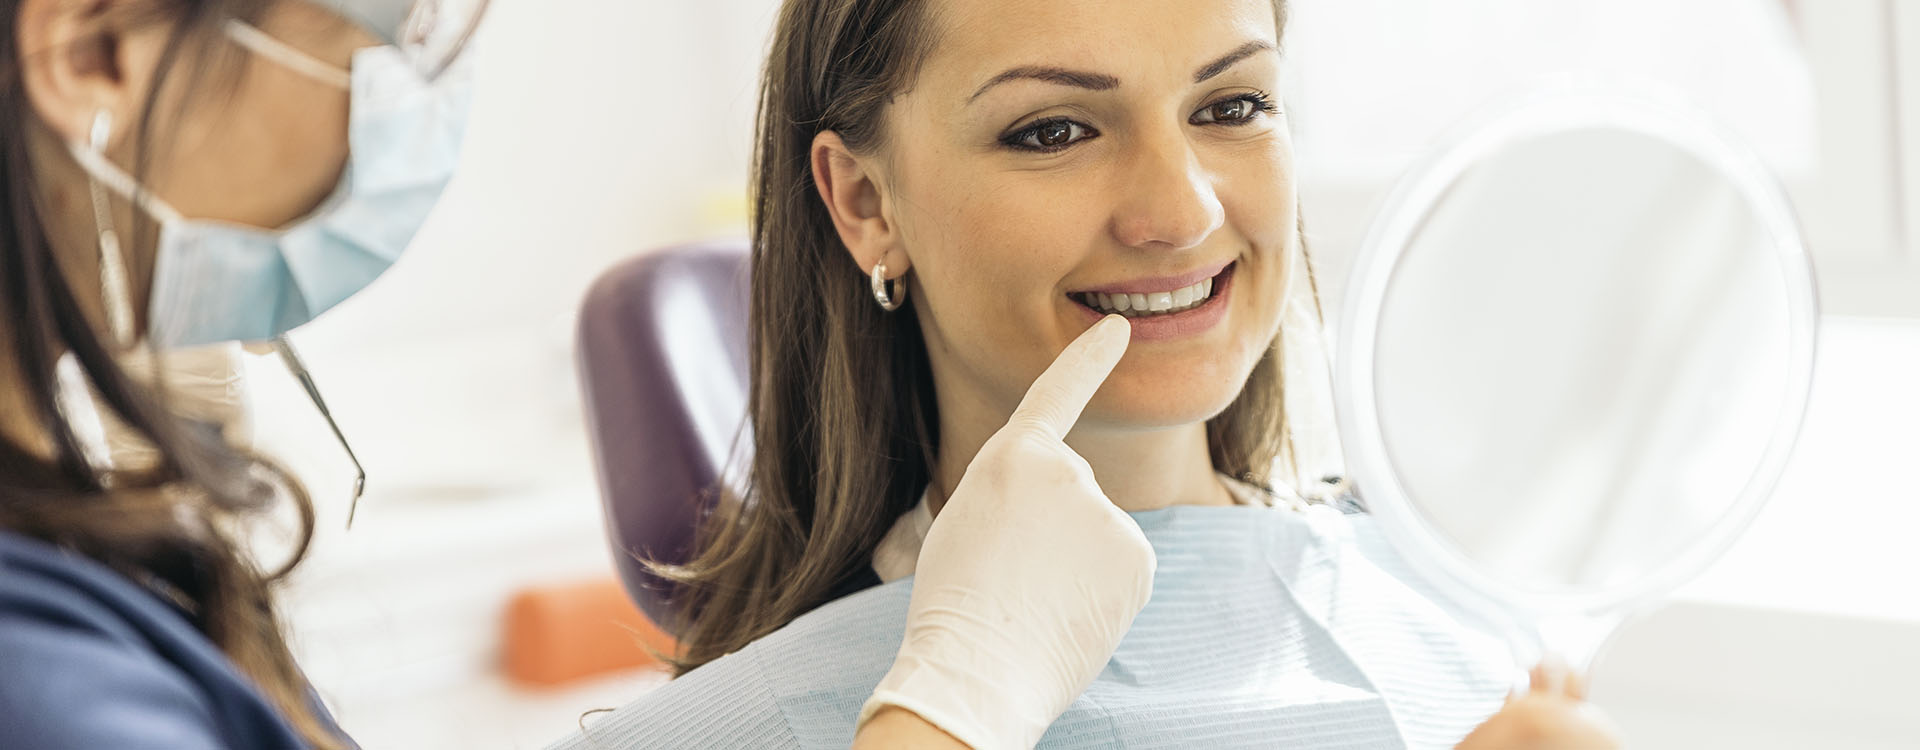 Clínica Dental Andrea Compte, tu Centro Odontológico especializado. Odontología en Vinaròs. Paciente observando los resultados después de la intervención.